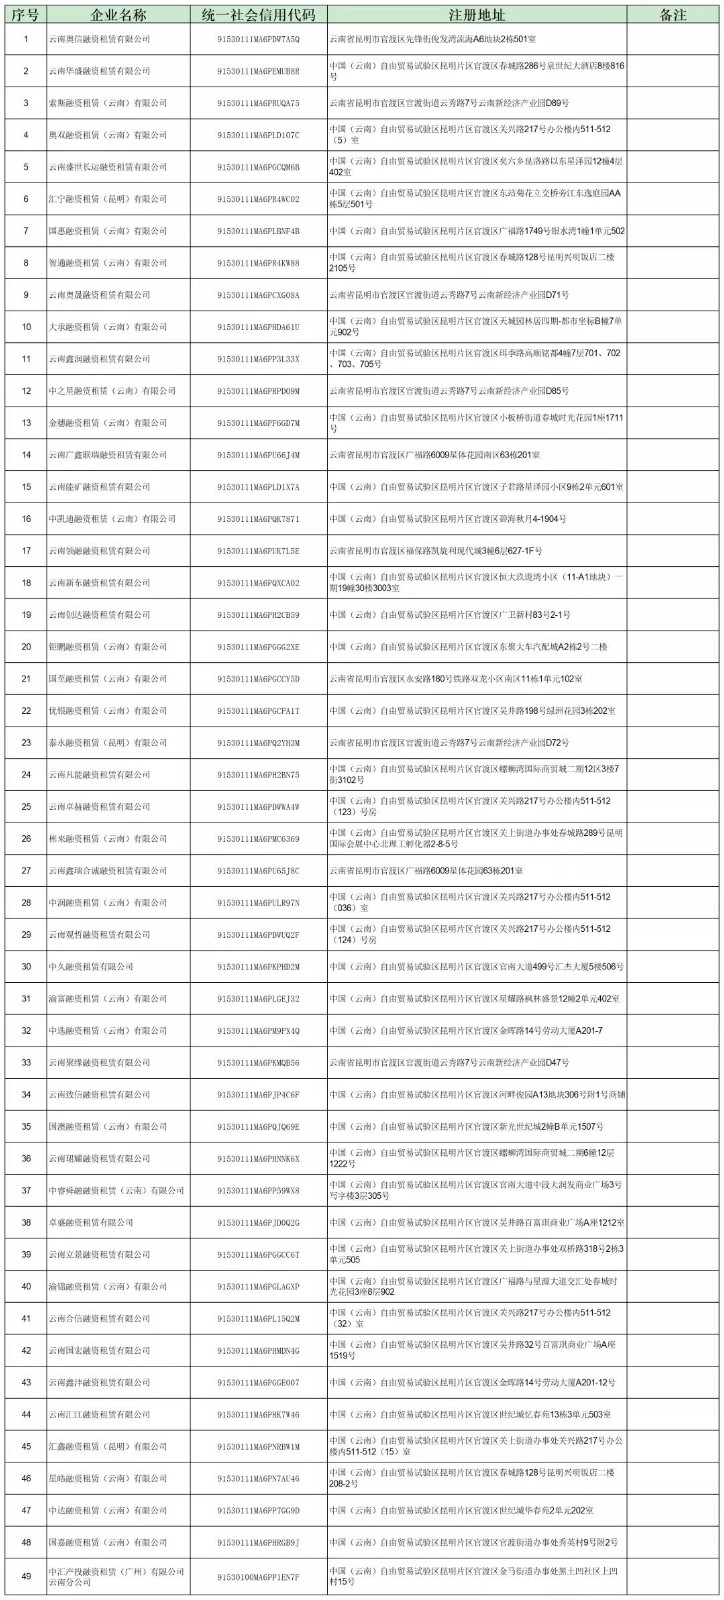 【监管动态】昆明市公布第三批非正常经营类融资租赁企业名单